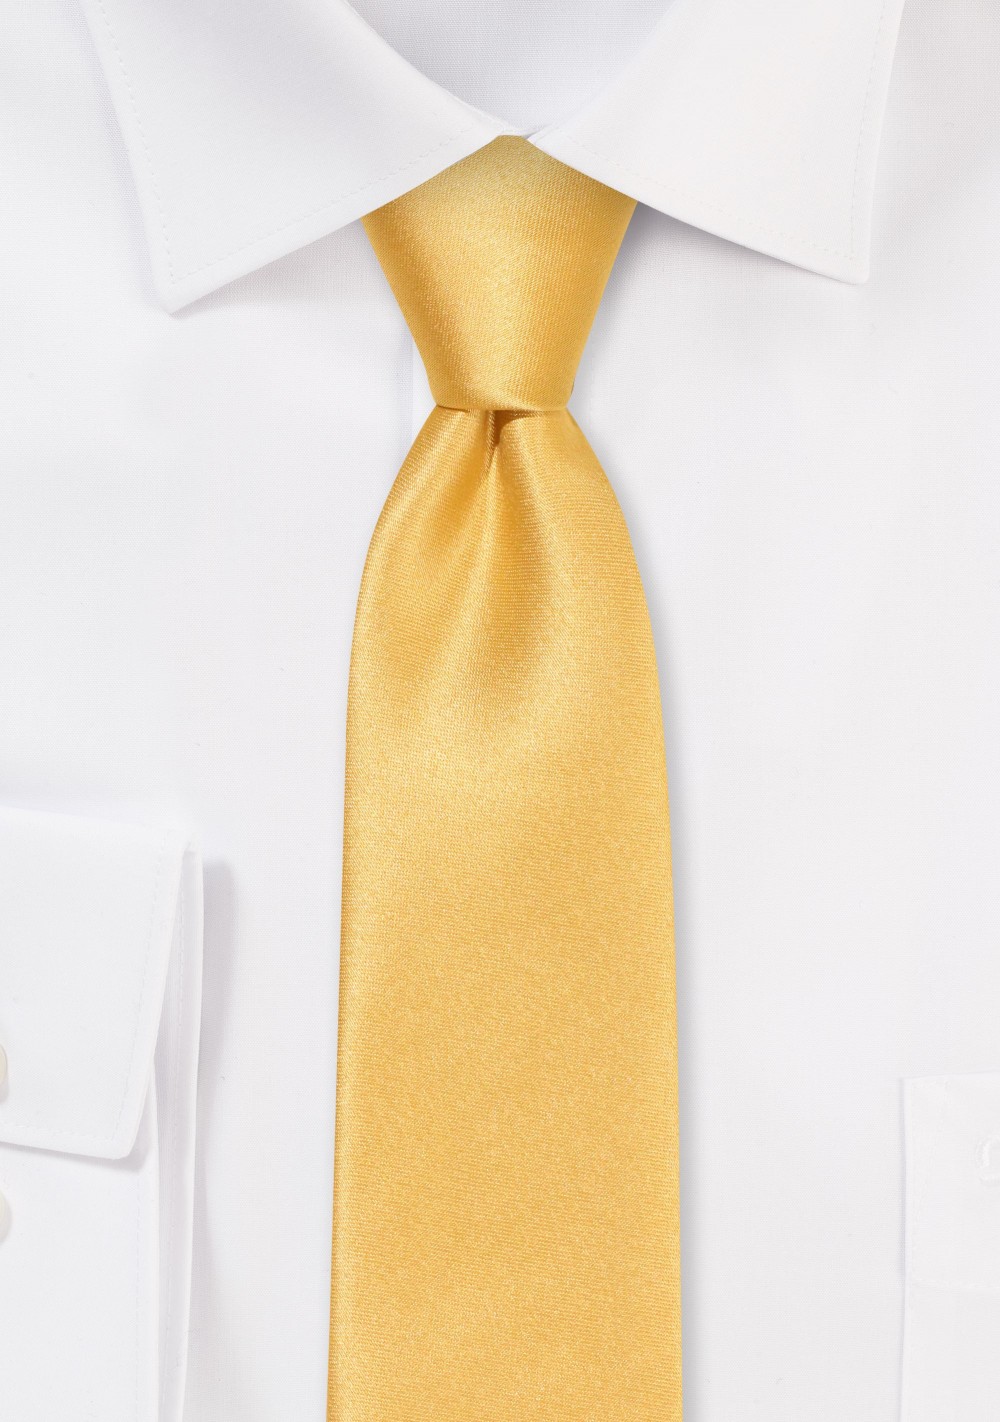 Solid Satin Skinny Tie in Golden